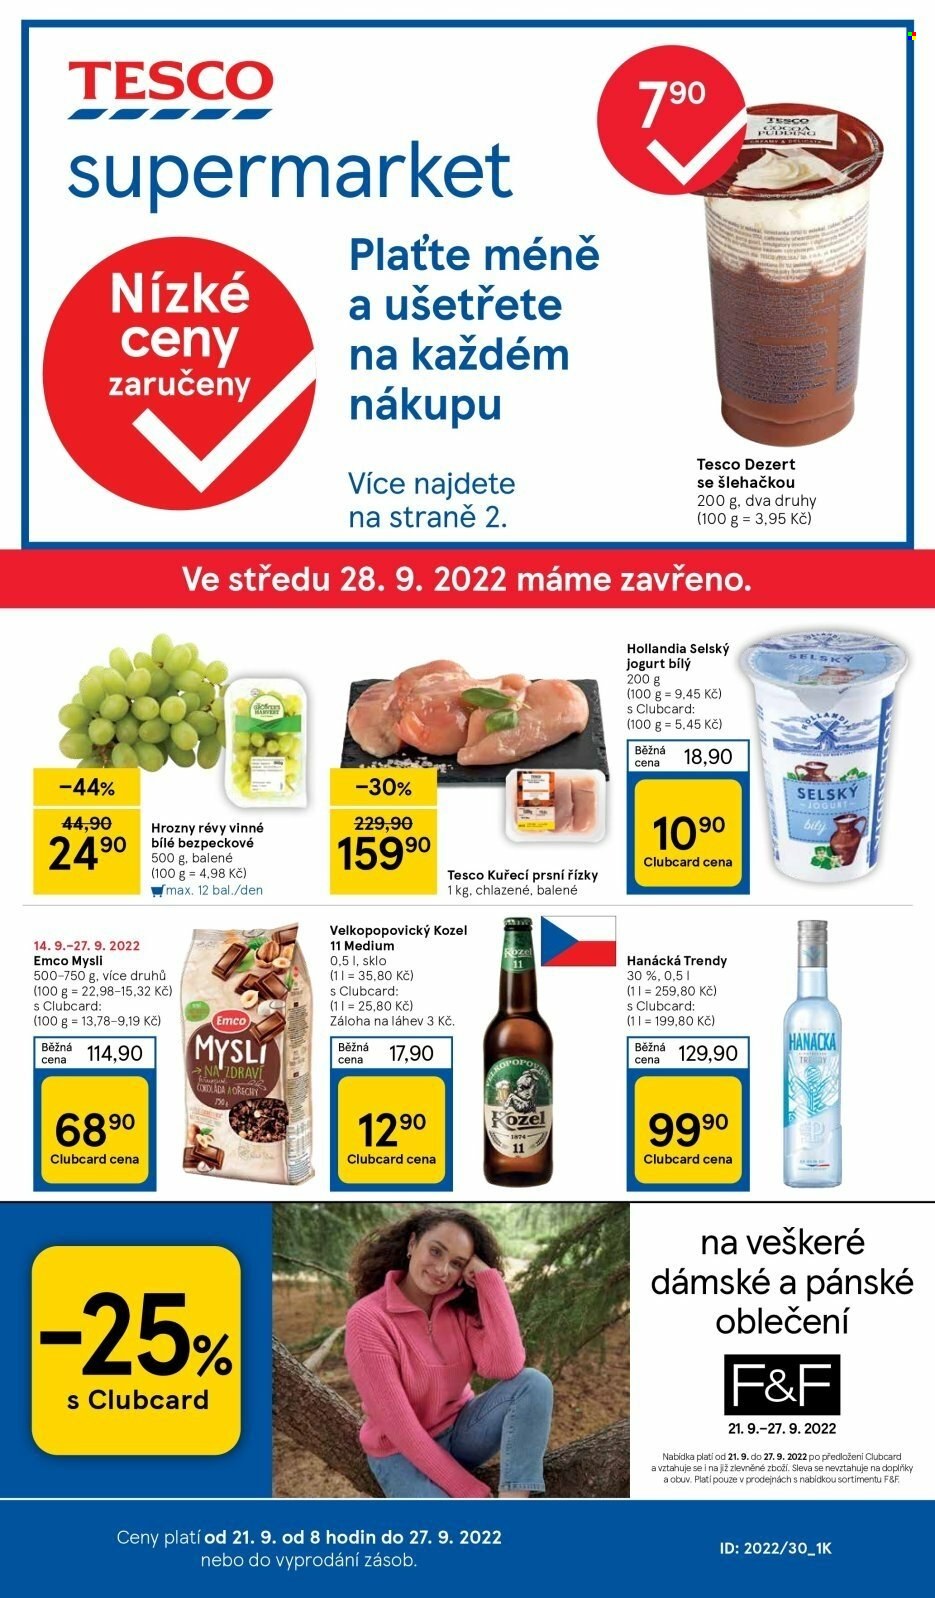 thumbnail - Leták TESCO supermarket - 21.9.2022 - 27.9.2022 - Produkty v akci - dezert, hrozny, hrozny bílé, kuřecí prsa, kuřecí maso, kuřecí prsa s kostí, jogurt, bílý jogurt, Hollandia, selský jogurt, Emco, müsli, Velkopopovický Kozel, pivo, vodka, Hanácká, F&F. Strana 1.